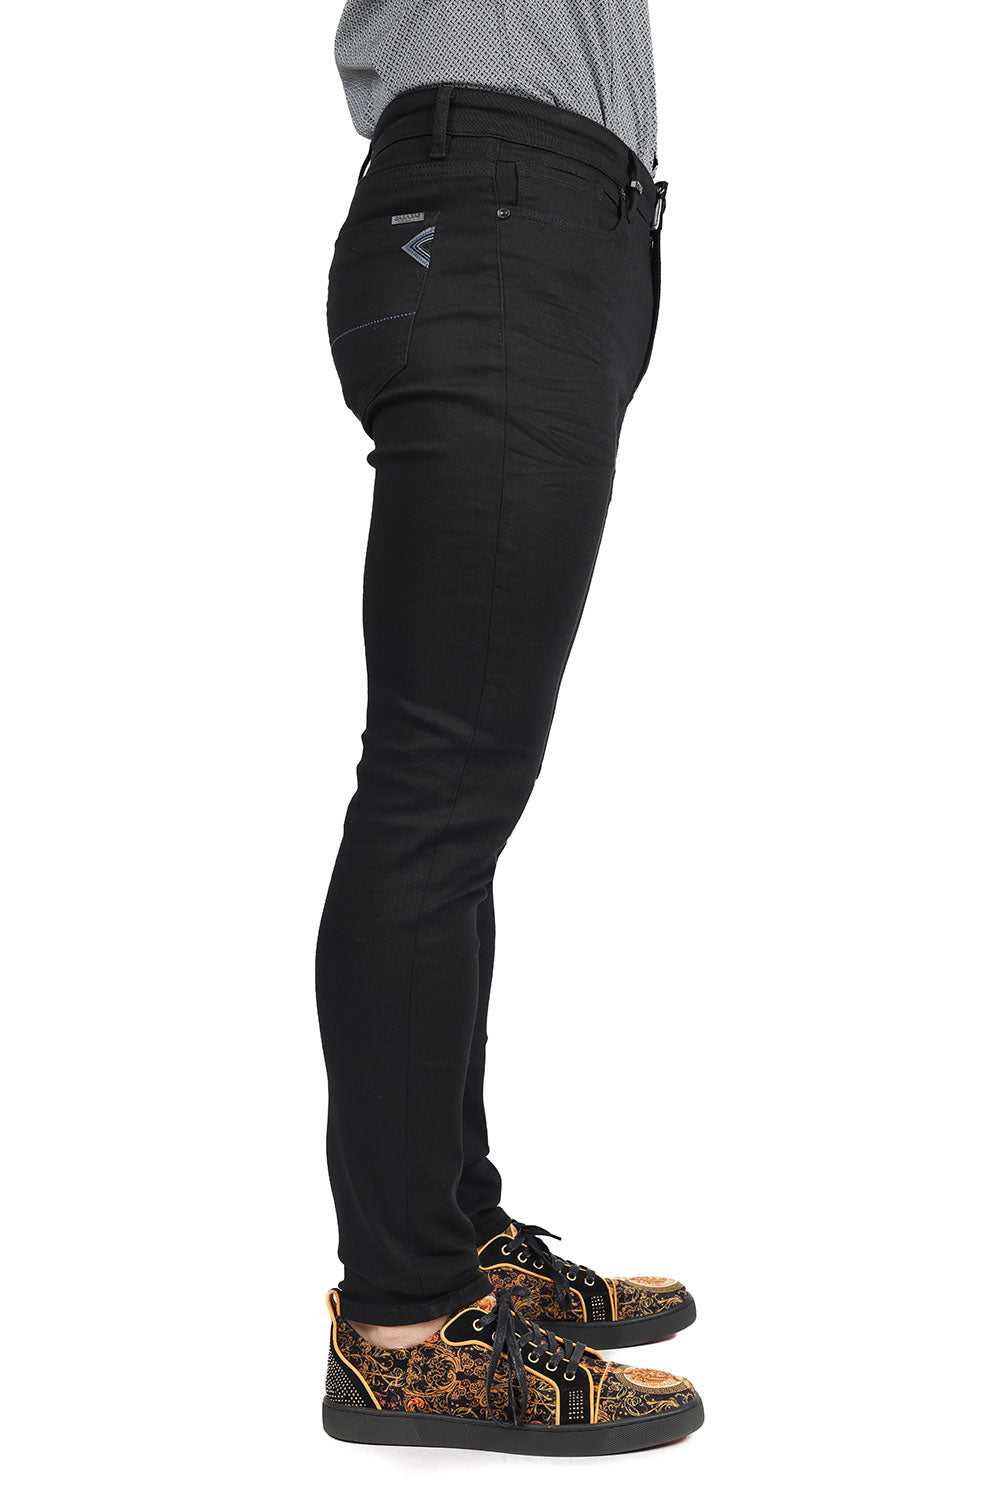 Barabas Men's Black White Navy 5 Pockets Solid Color Prints Jeans 1700 Black